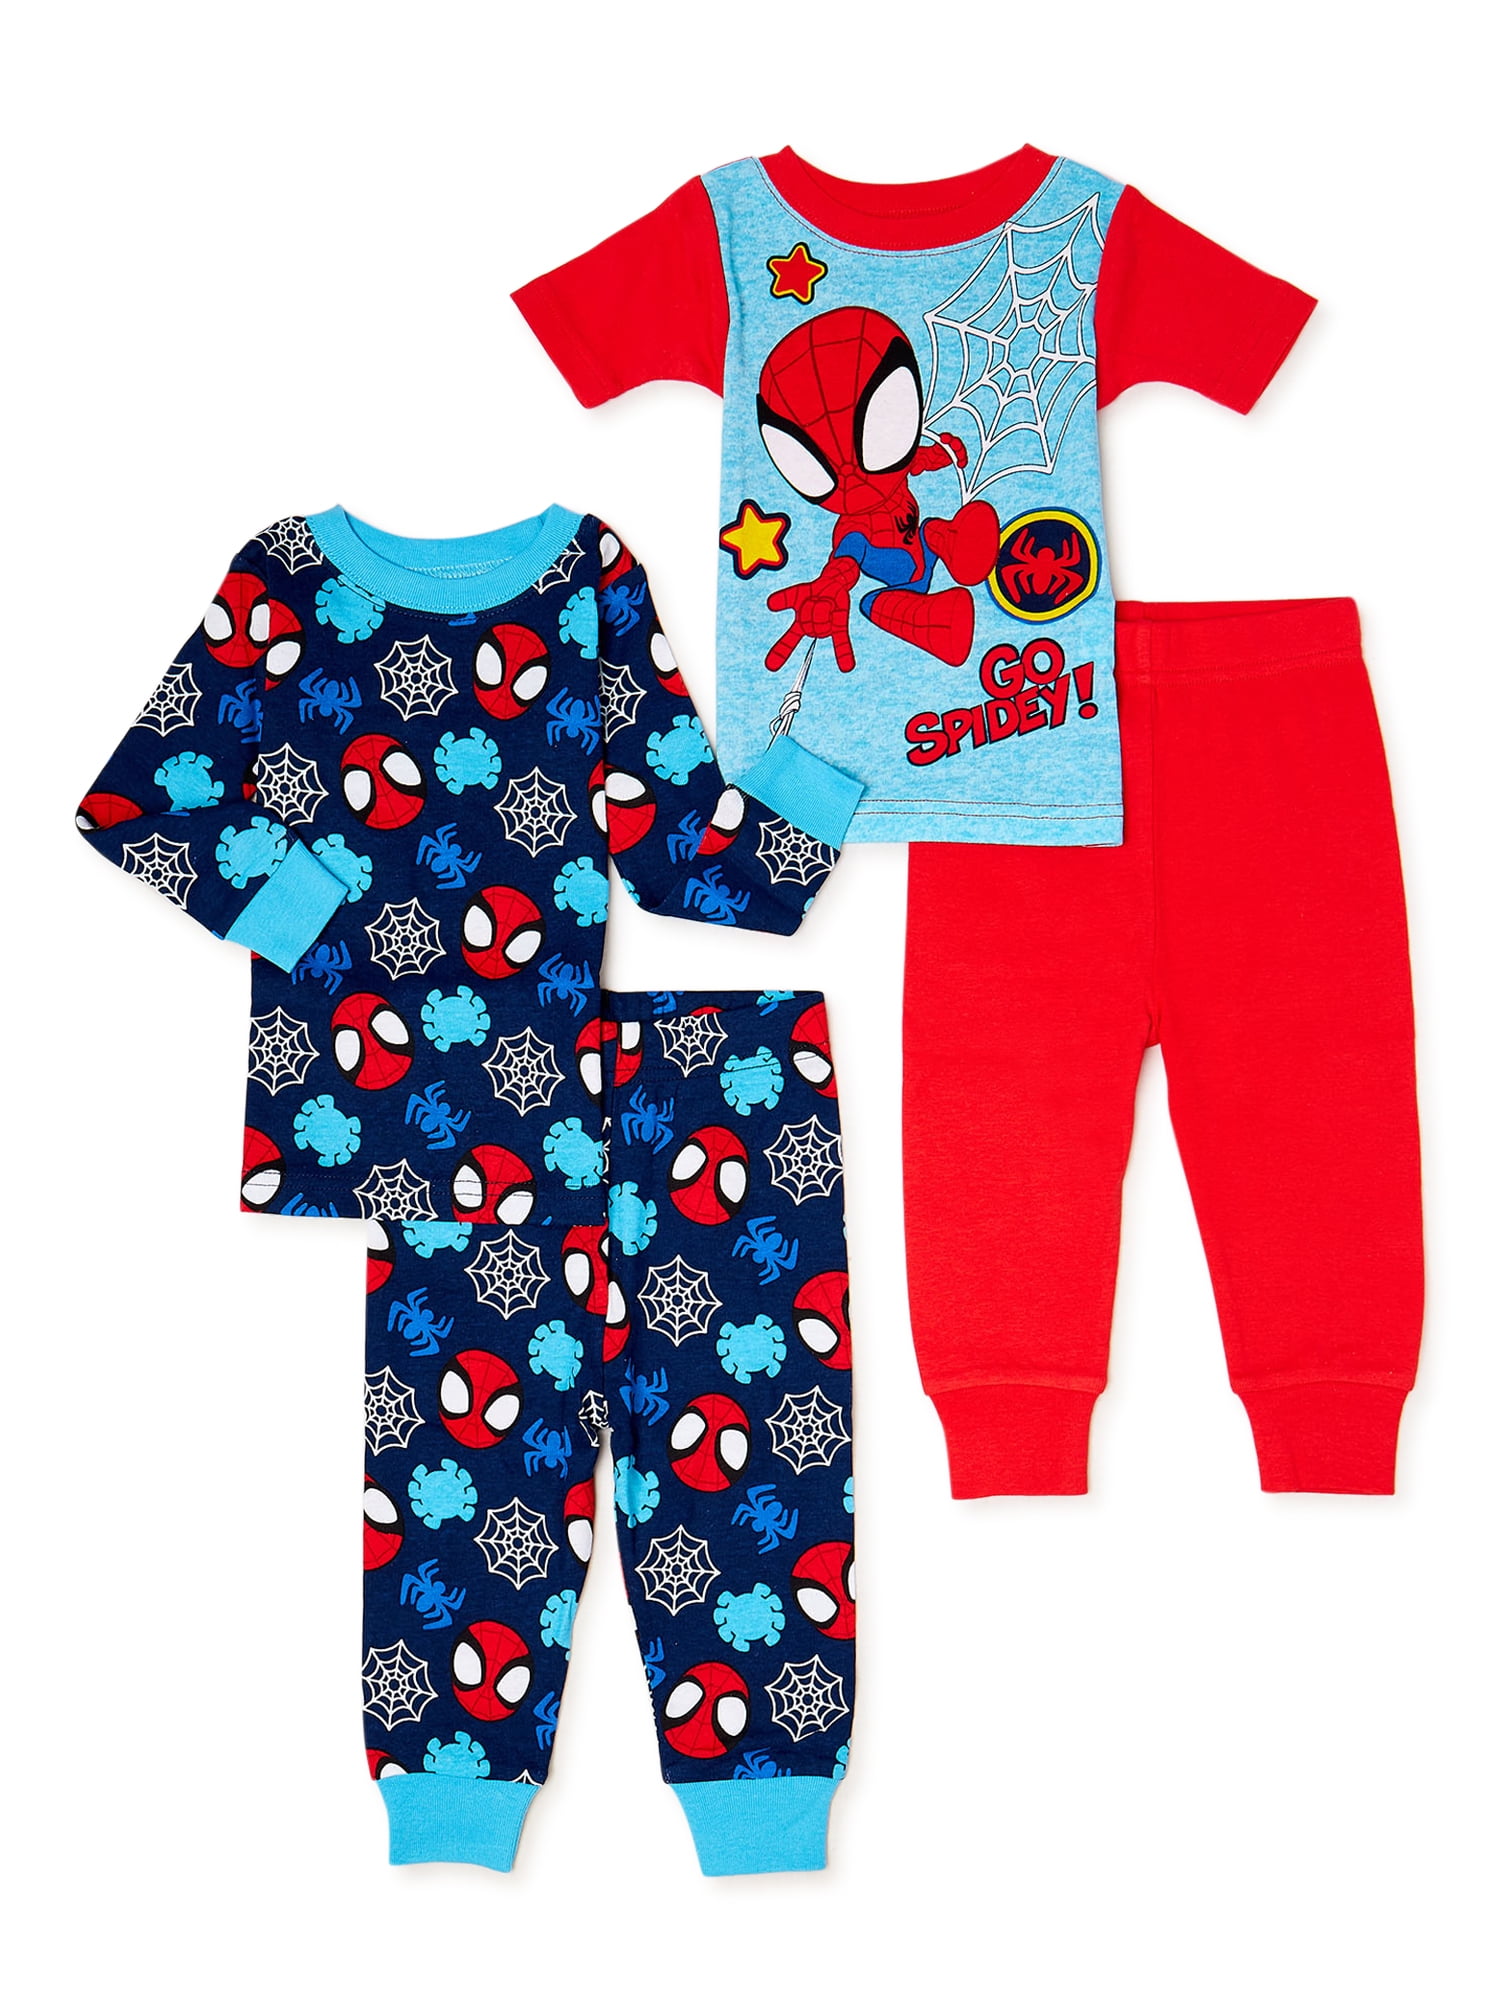 Birthday Boy Blue Dinosaur Pyjamas Set Age 1,2,3,4,5 Pjs 